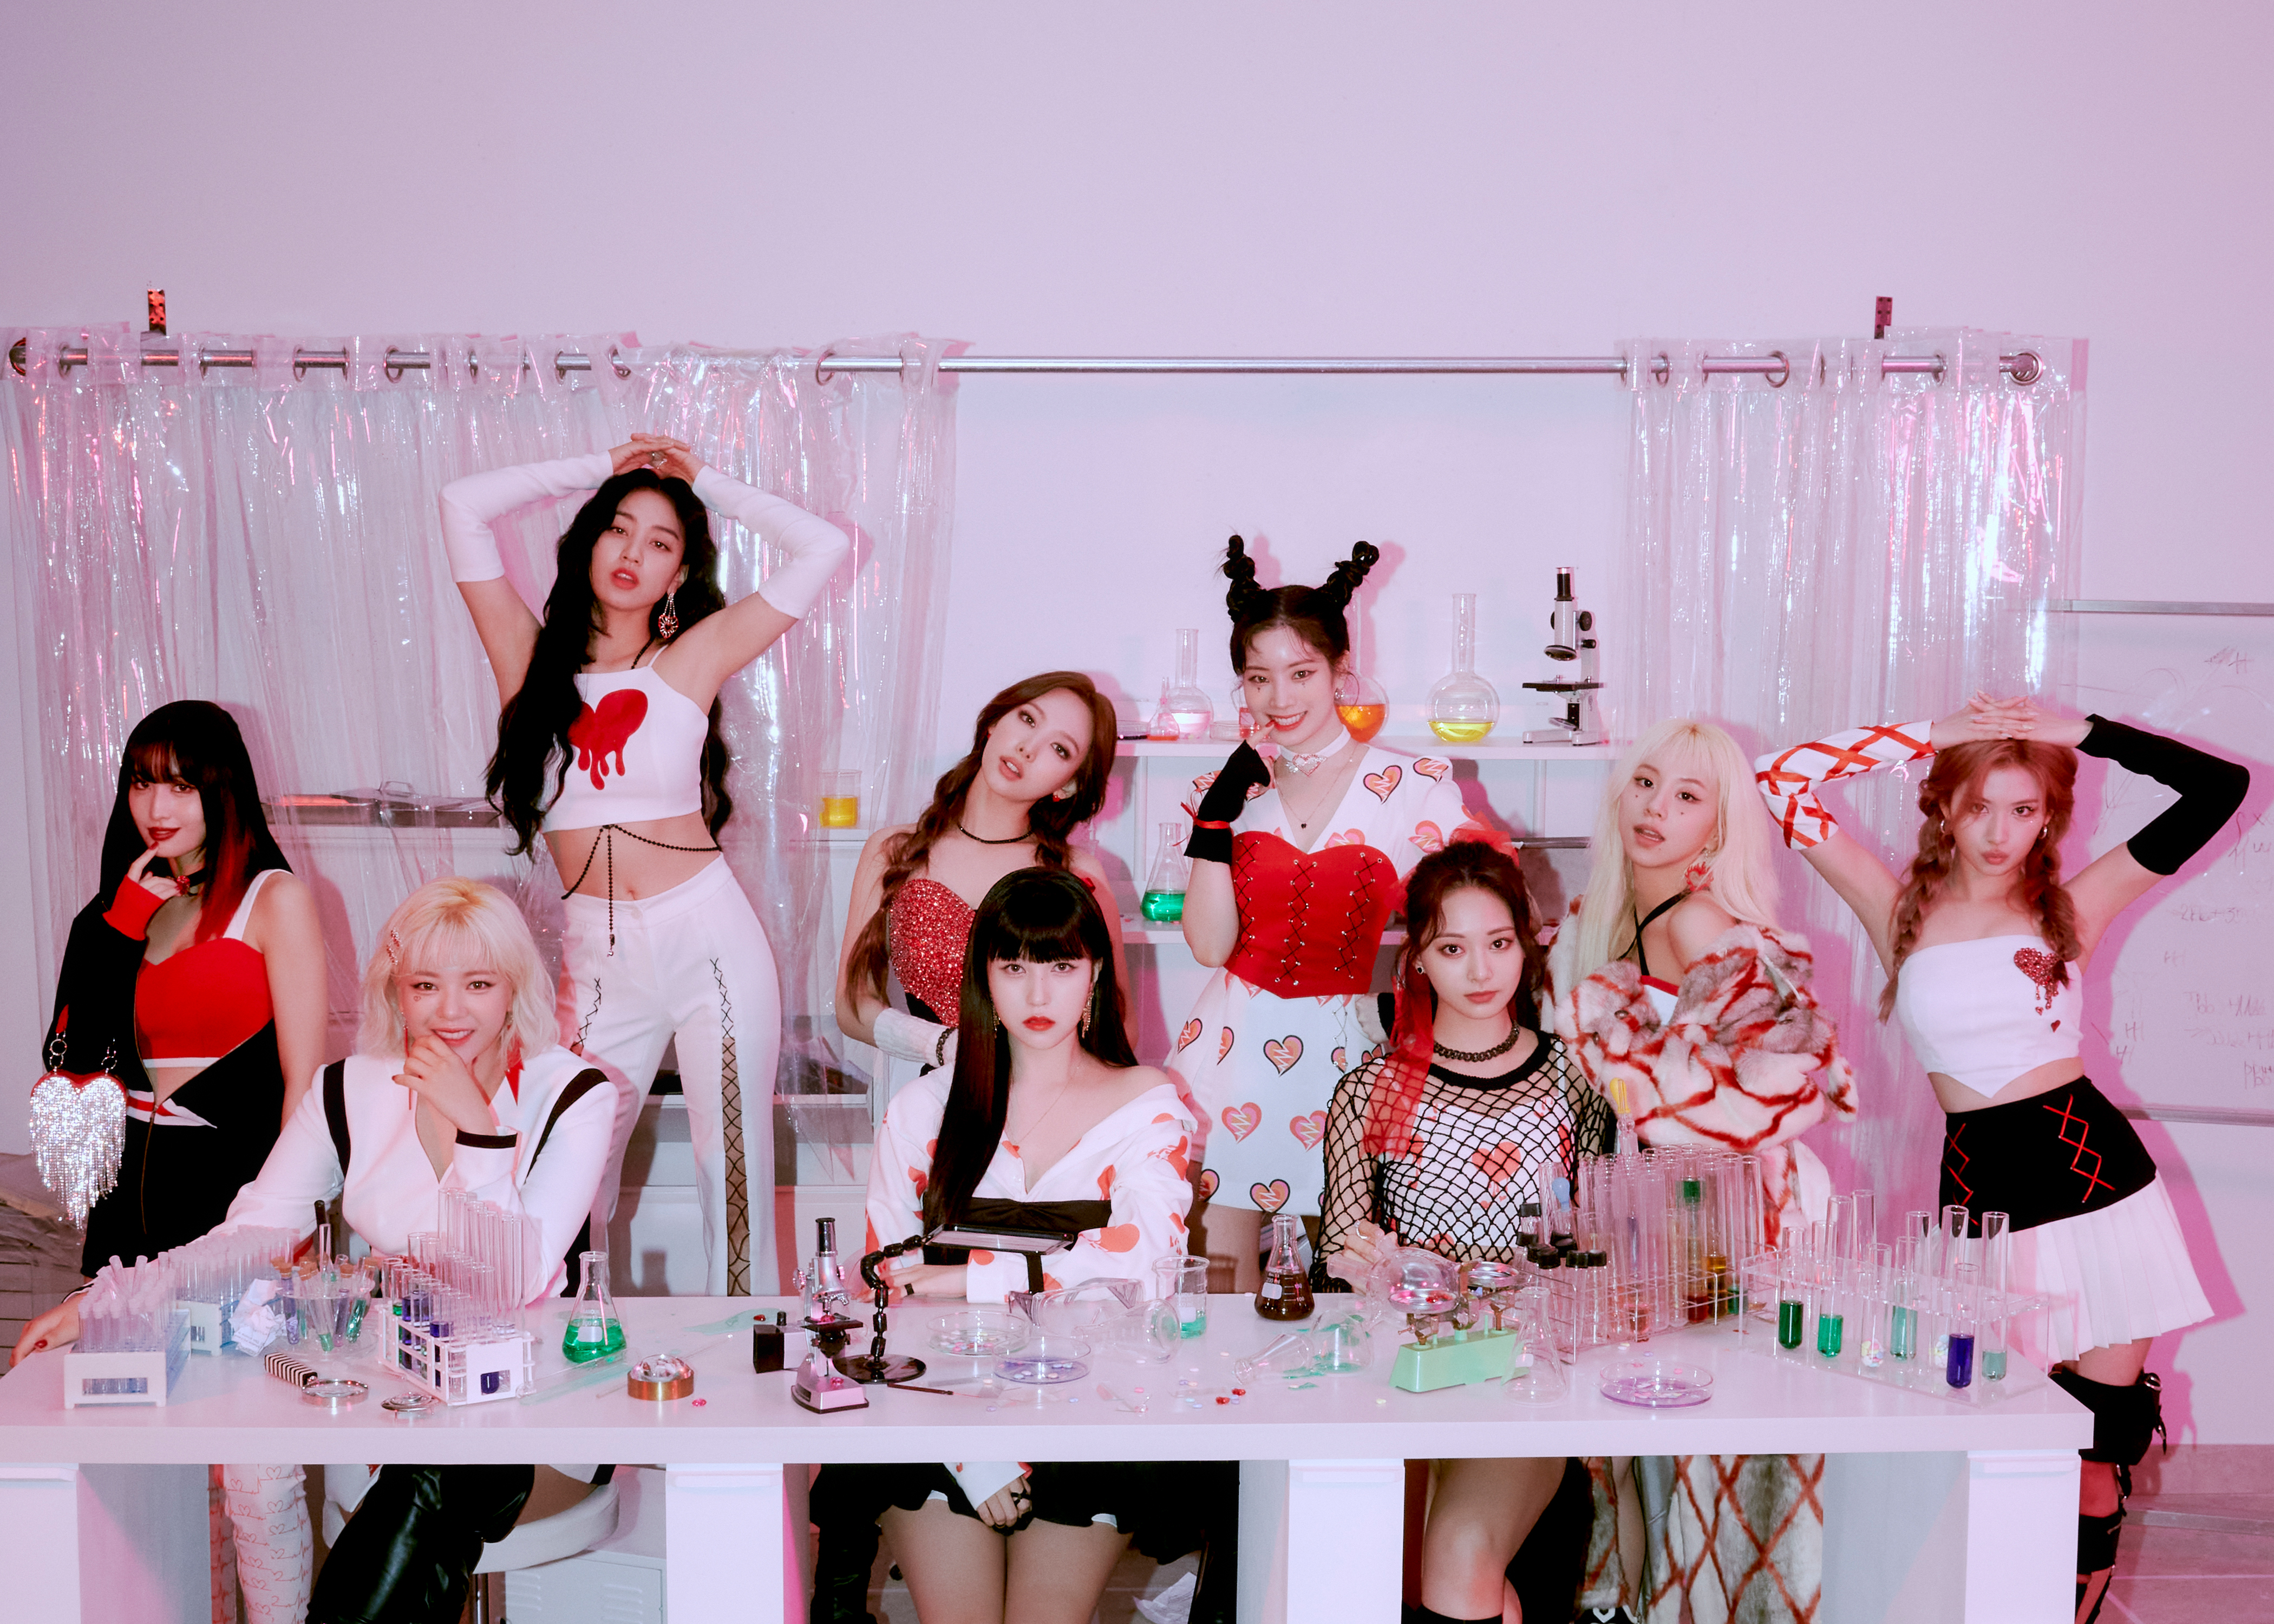 O grupo é considerado um dos mais populares da ásia e conquistou o público com seu 'color pop'. Da esquerda para a direita: Momo, Jeongyeon, Jihyo, Nayeon, Mina, Dahyun, Tzuyu, Chaeyoung e Sana. Foto: JYP Entertainment